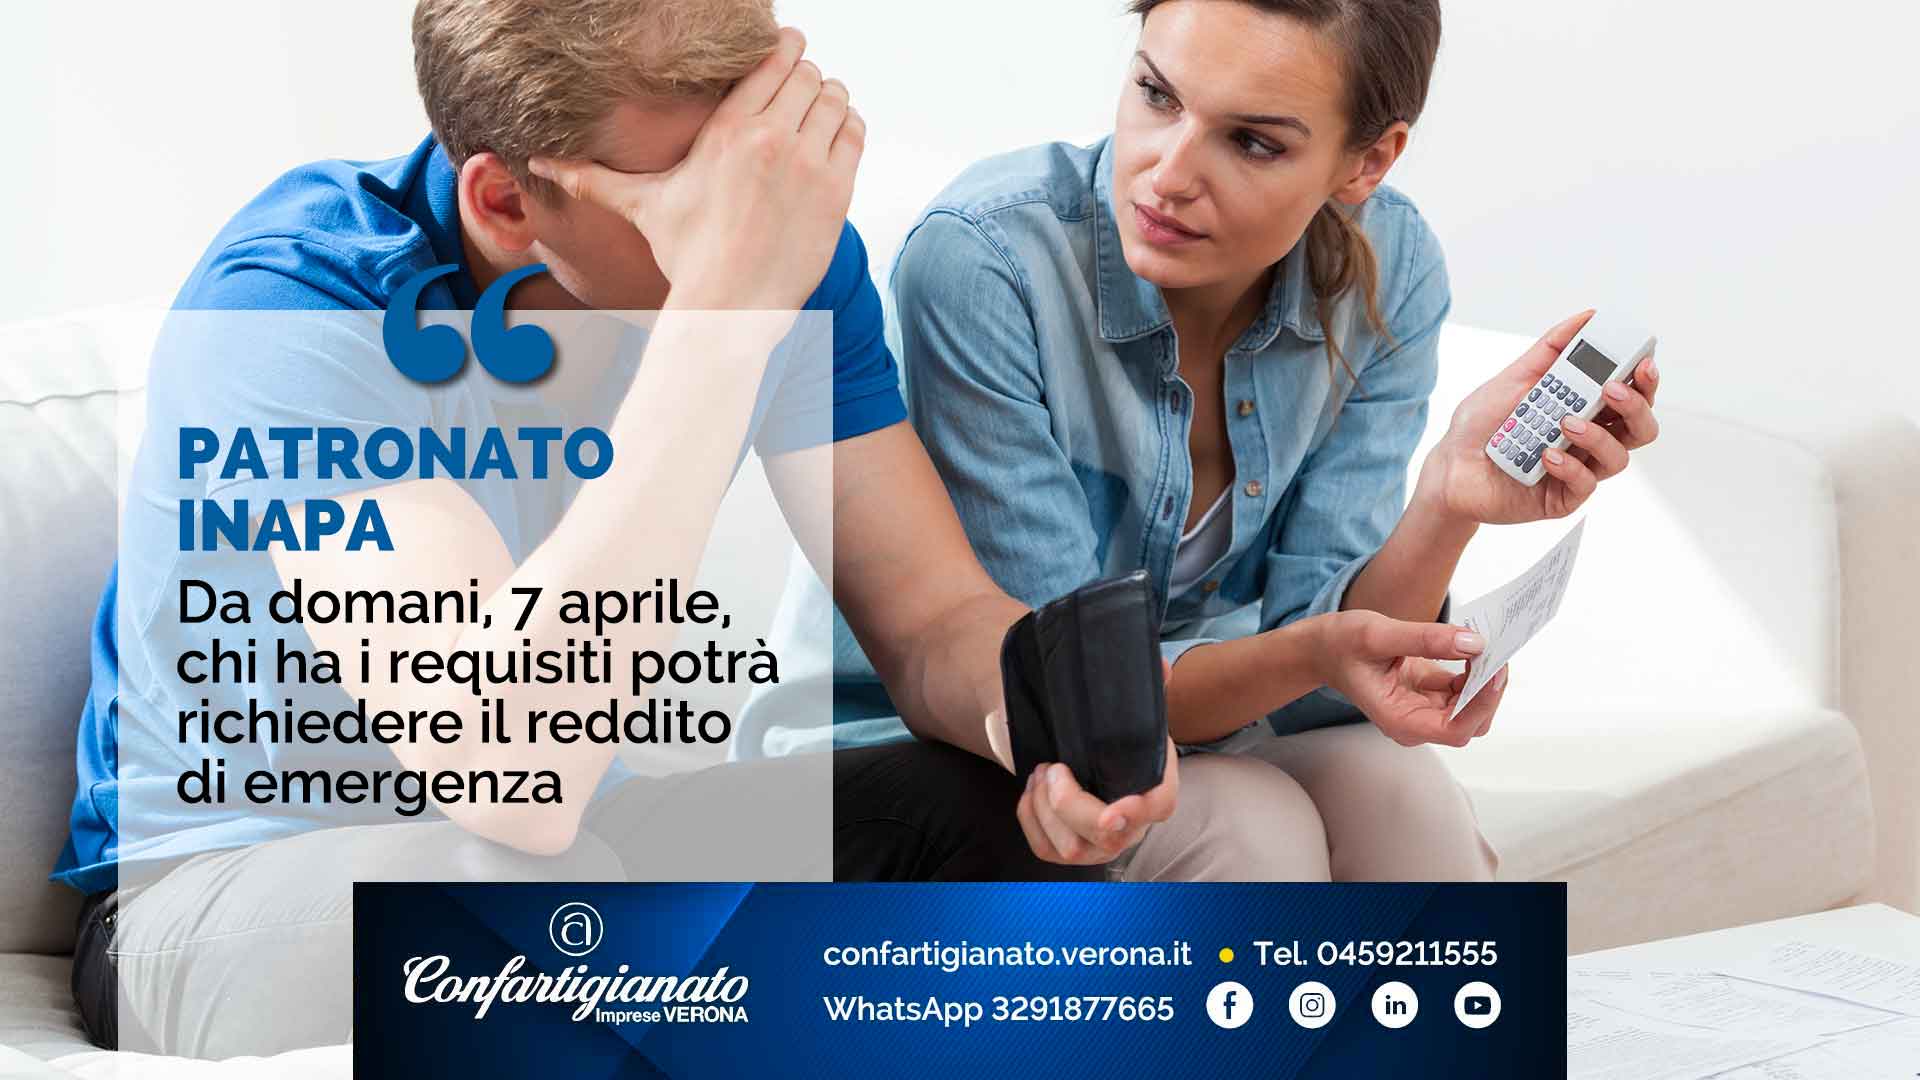 PATRONATO INAPA – Da domani, 7 aprile, chi ha i requisiti potrà richiedere il reddito di emergenza